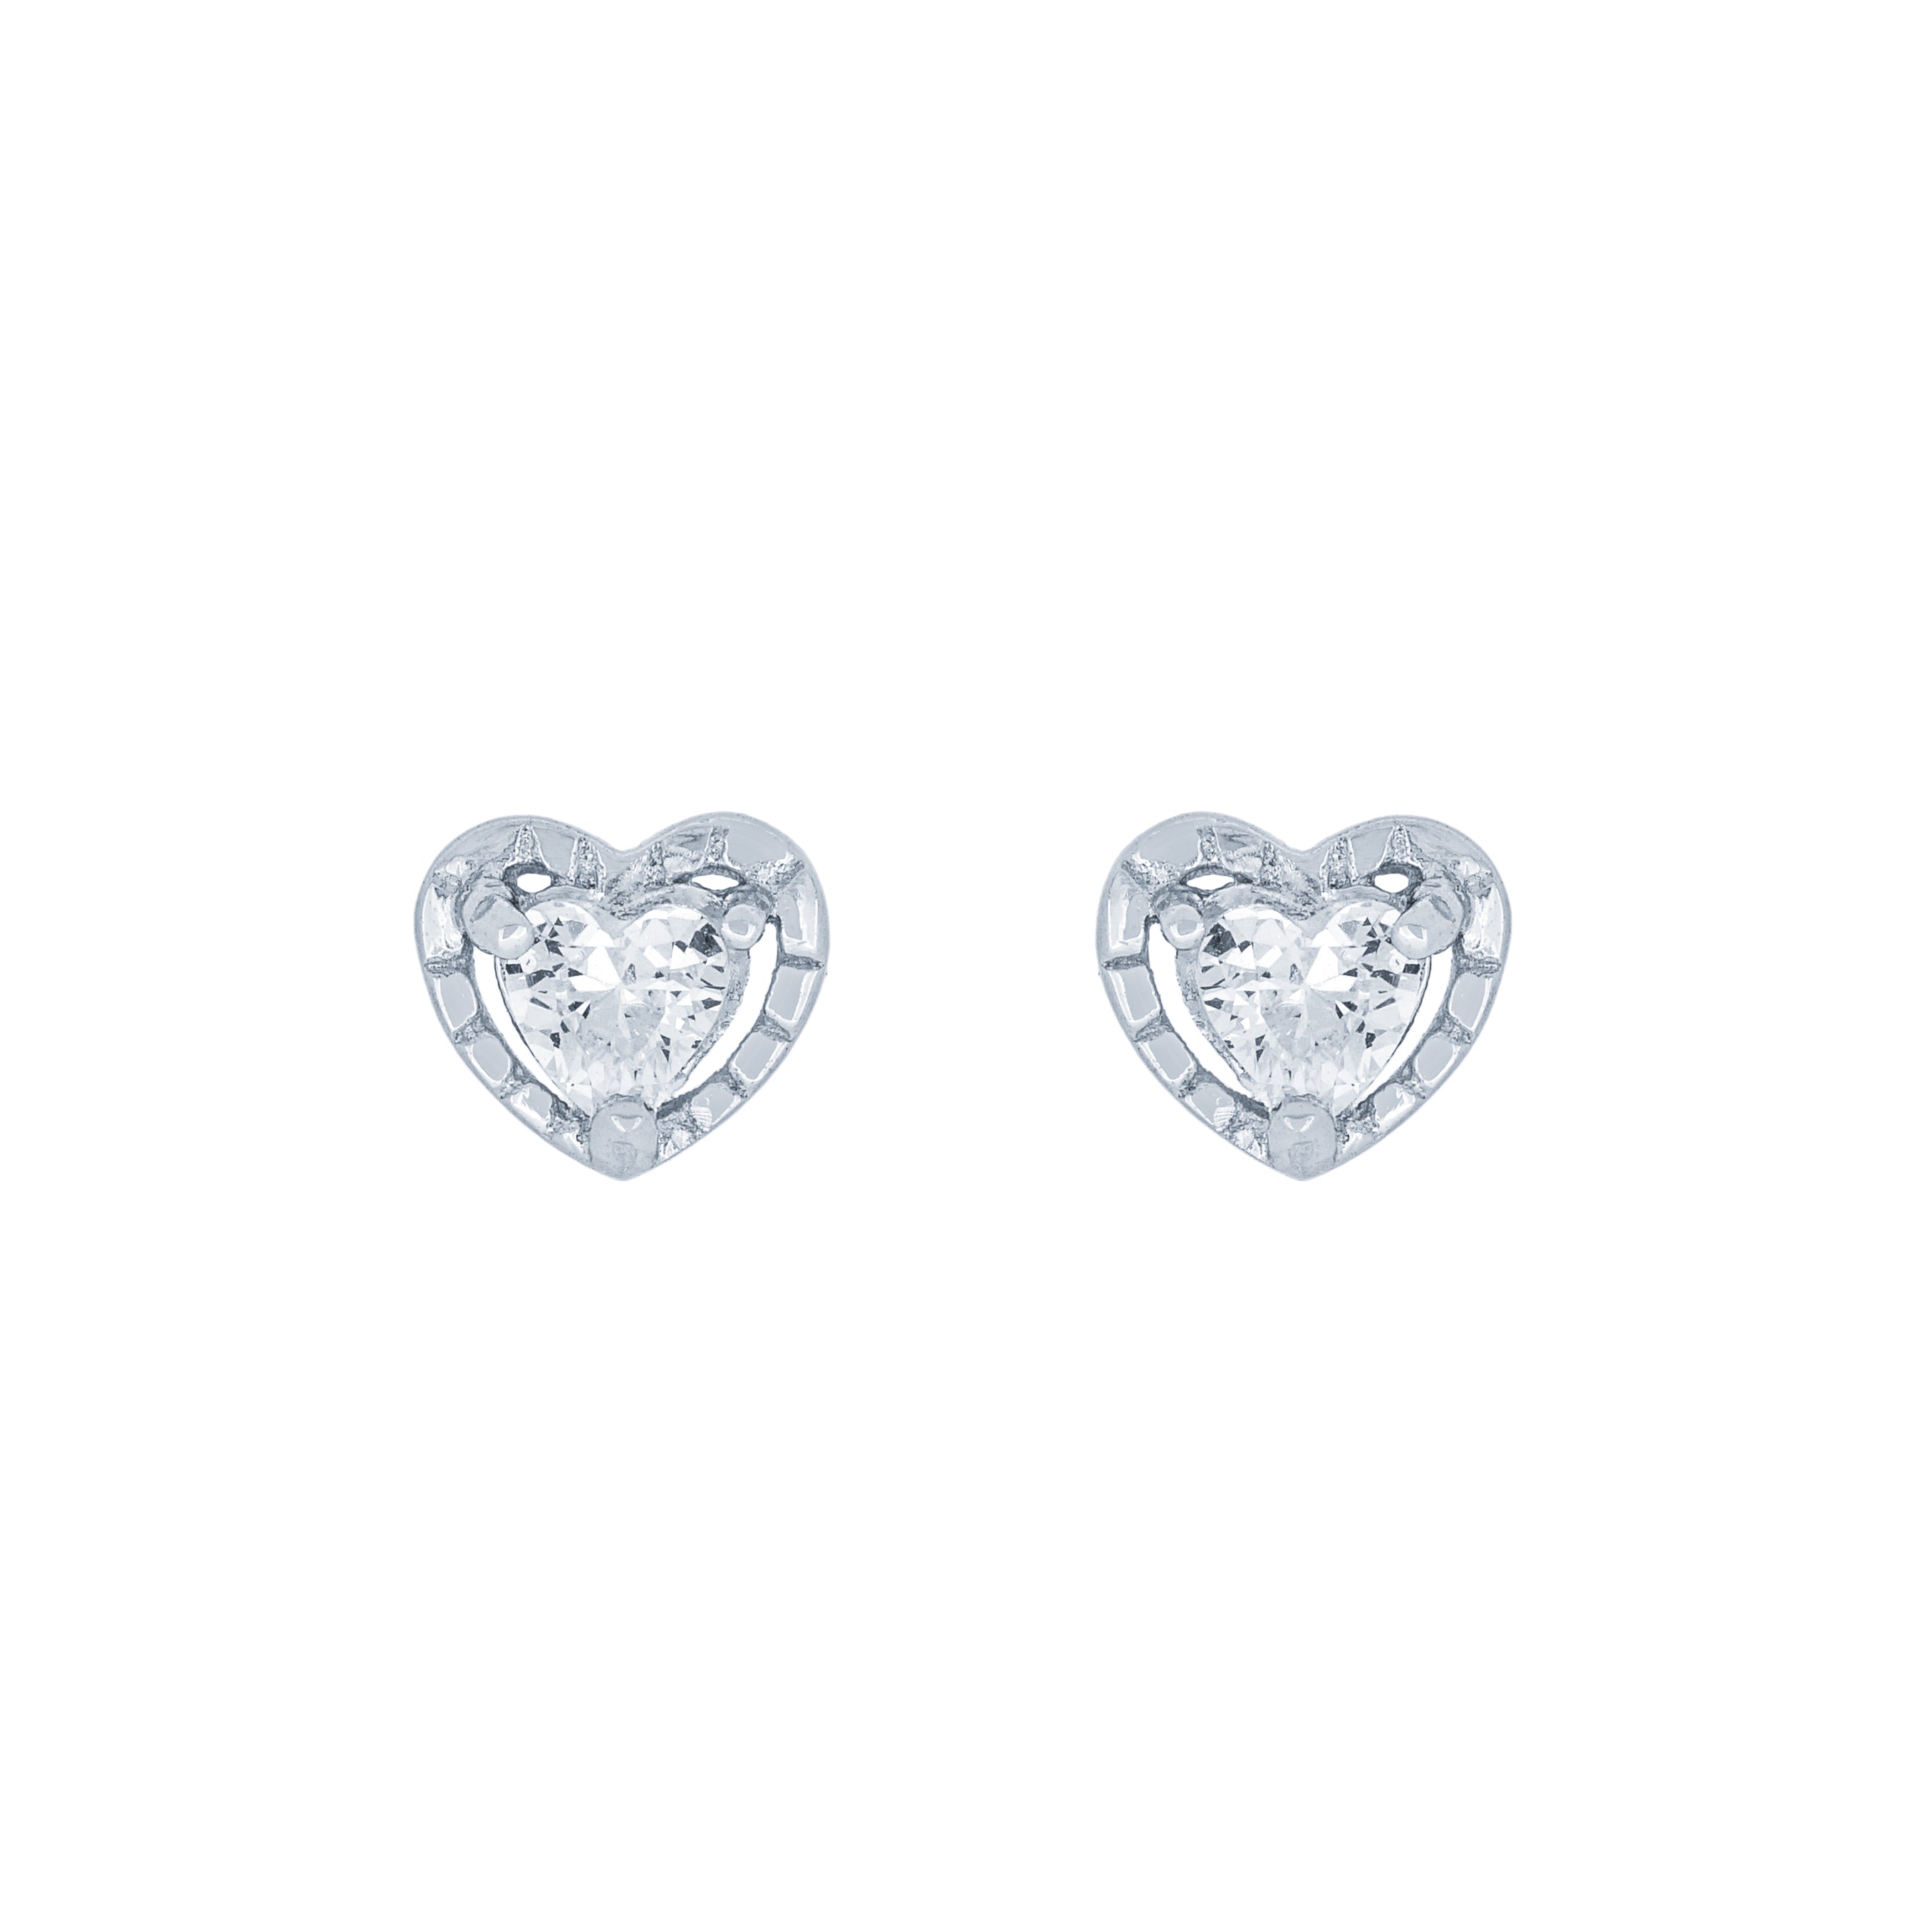 (100098) White Cubic Zirconia Heart Stud Earrings In Sterling Silver